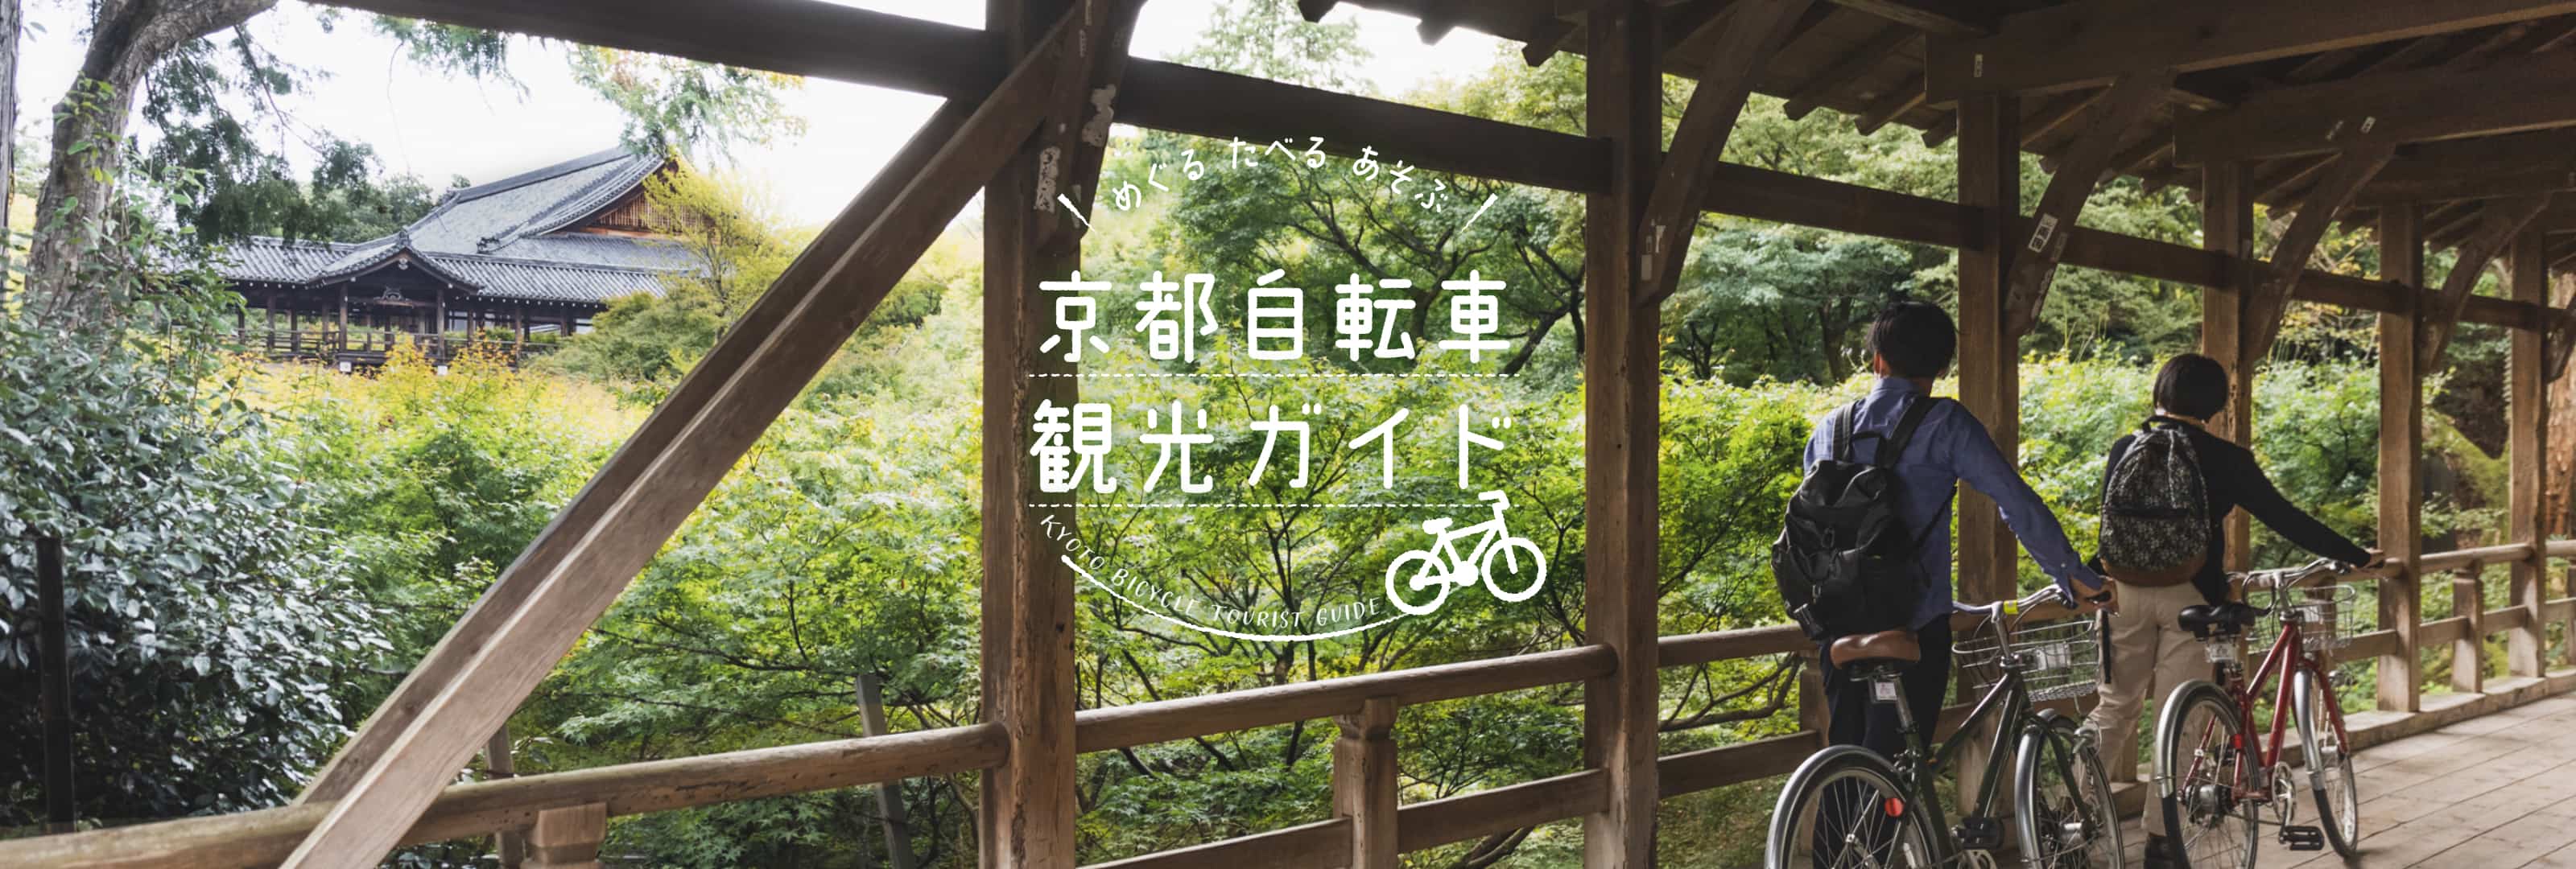 めぐる食べる遊ぶ 京都自転車観光ガイド